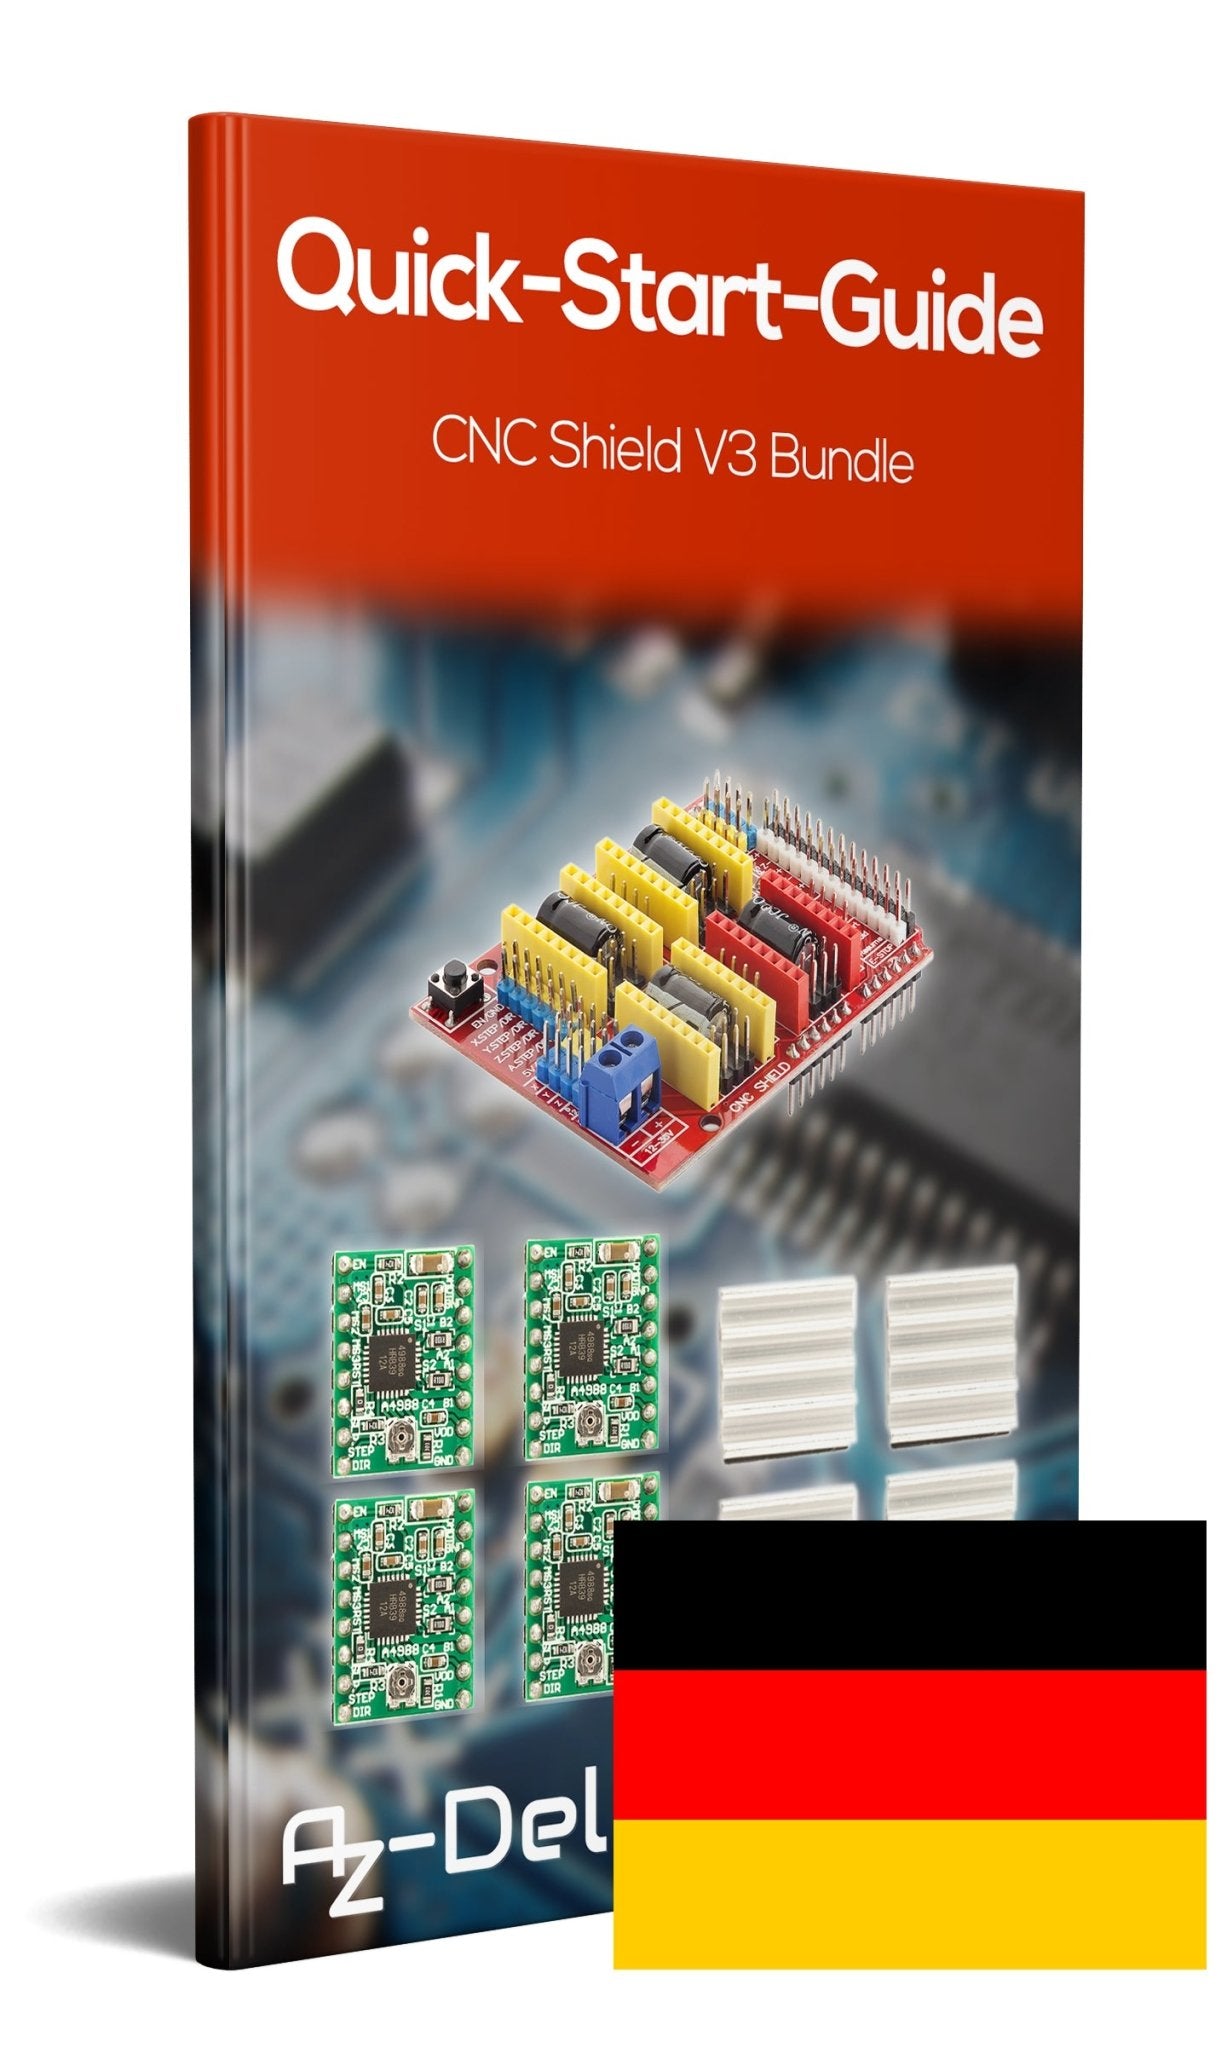 CNC Shield V3 Bundle mit 4 Stück A4988 Schrittmotor Treiber Stepper mit Kühlkörper für 3D Drucker - AZ-Delivery